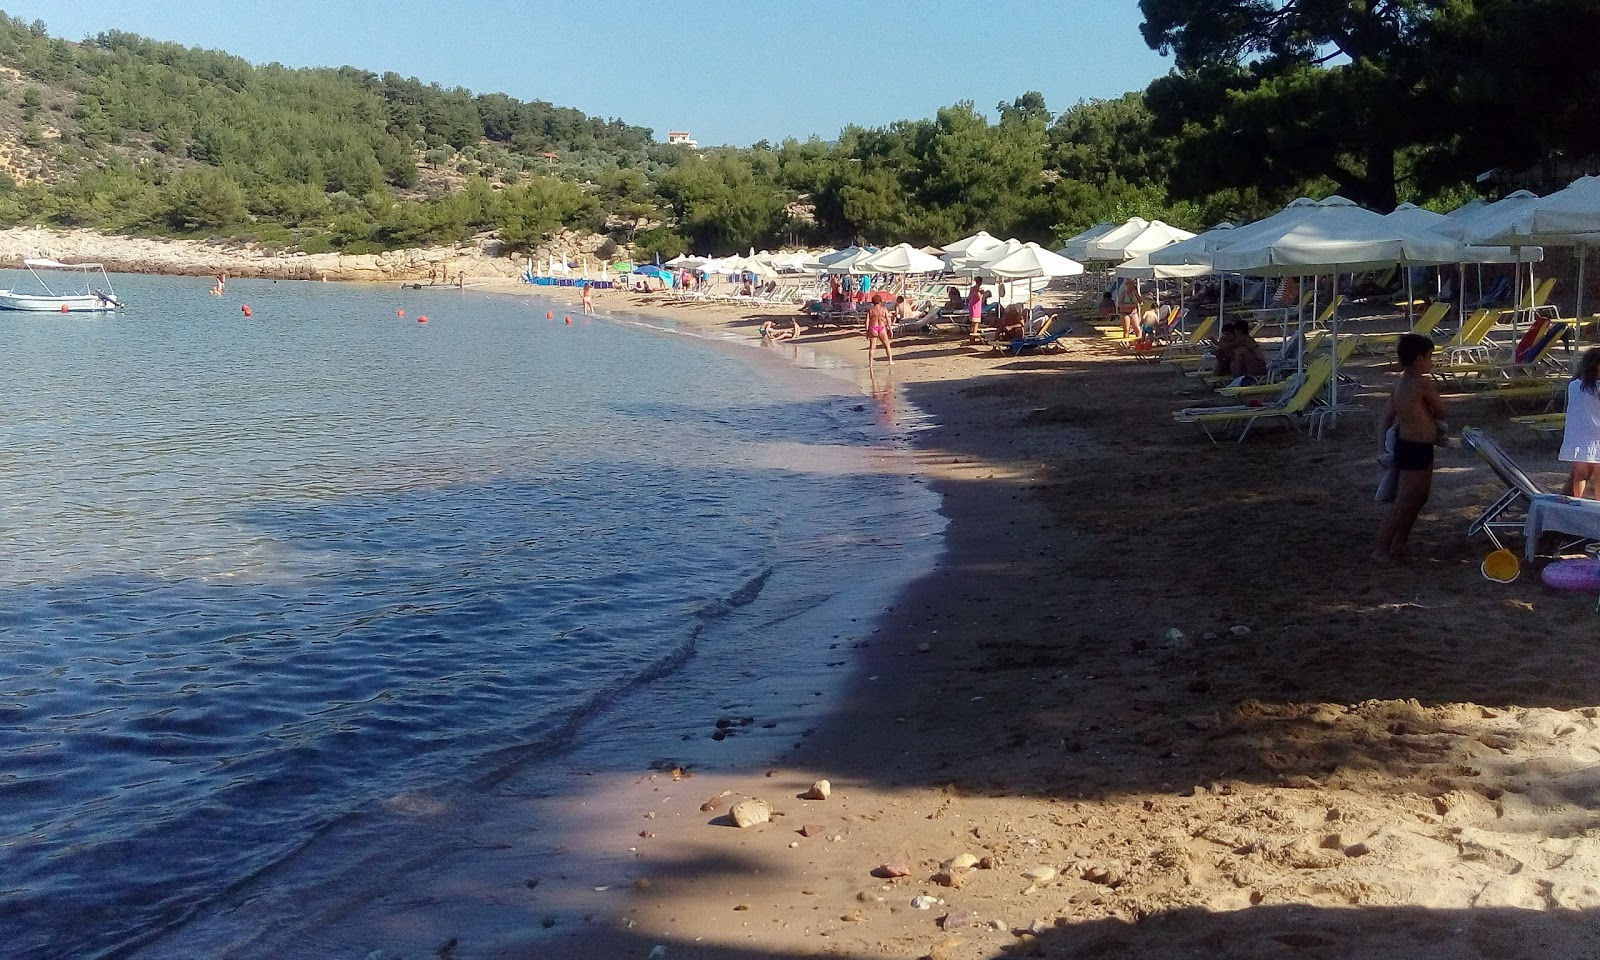 Zdjęcie Rosonkremos beach - popularne miejsce wśród znawców relaksu